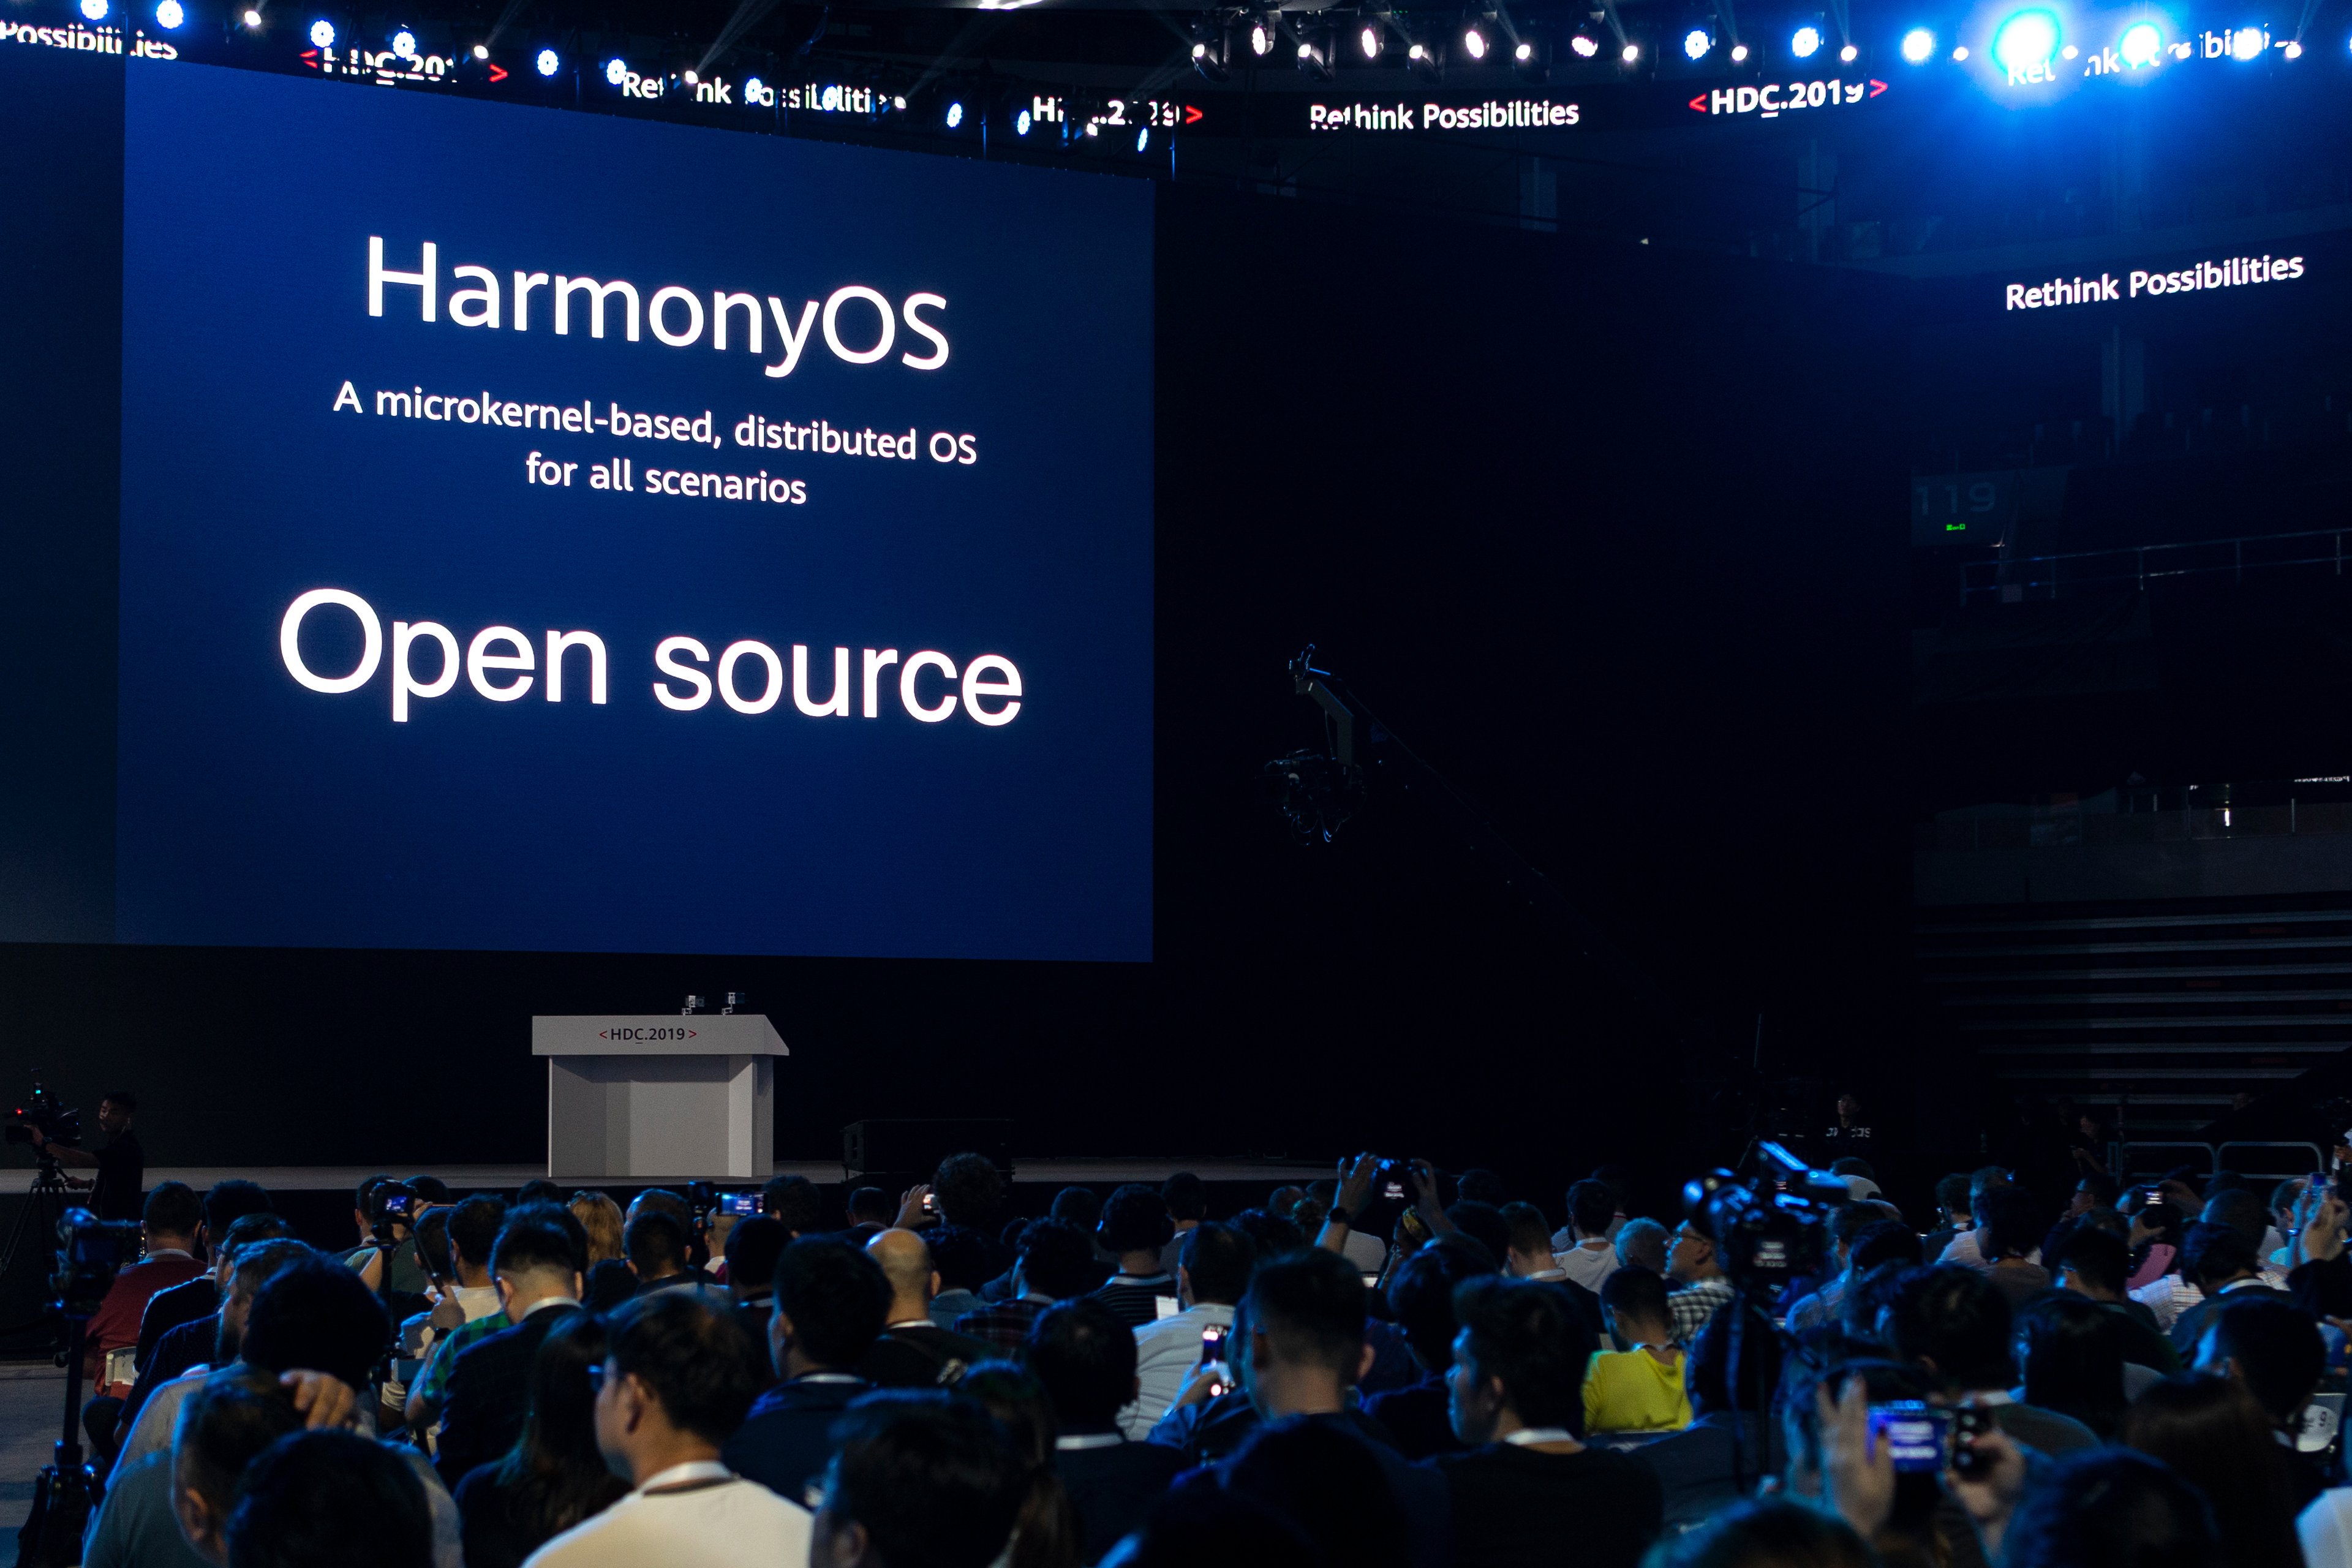 harmonyOS open source